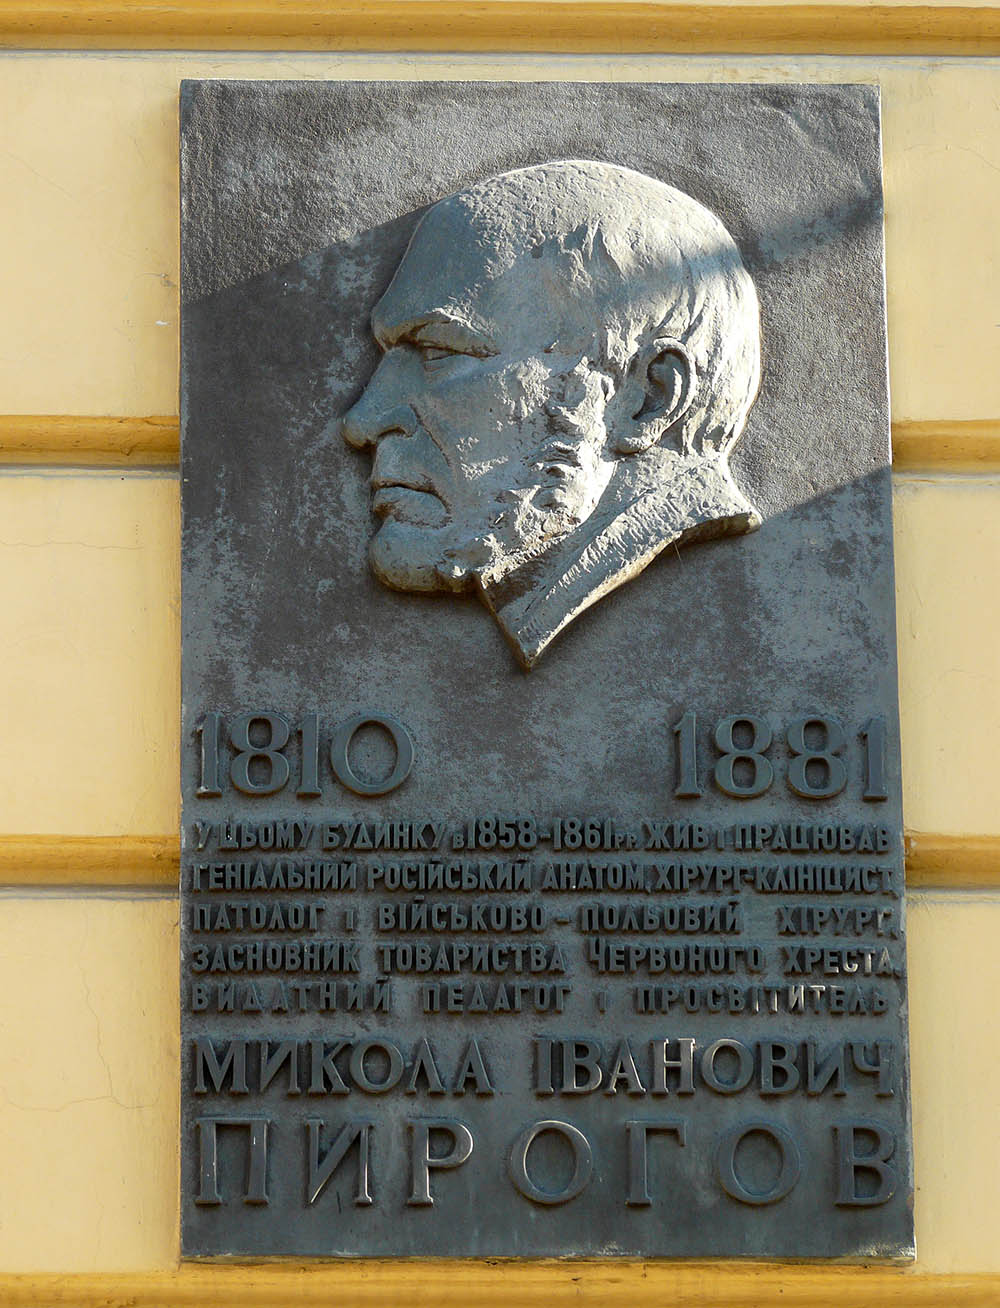 Memorial Nikolay Pirogov